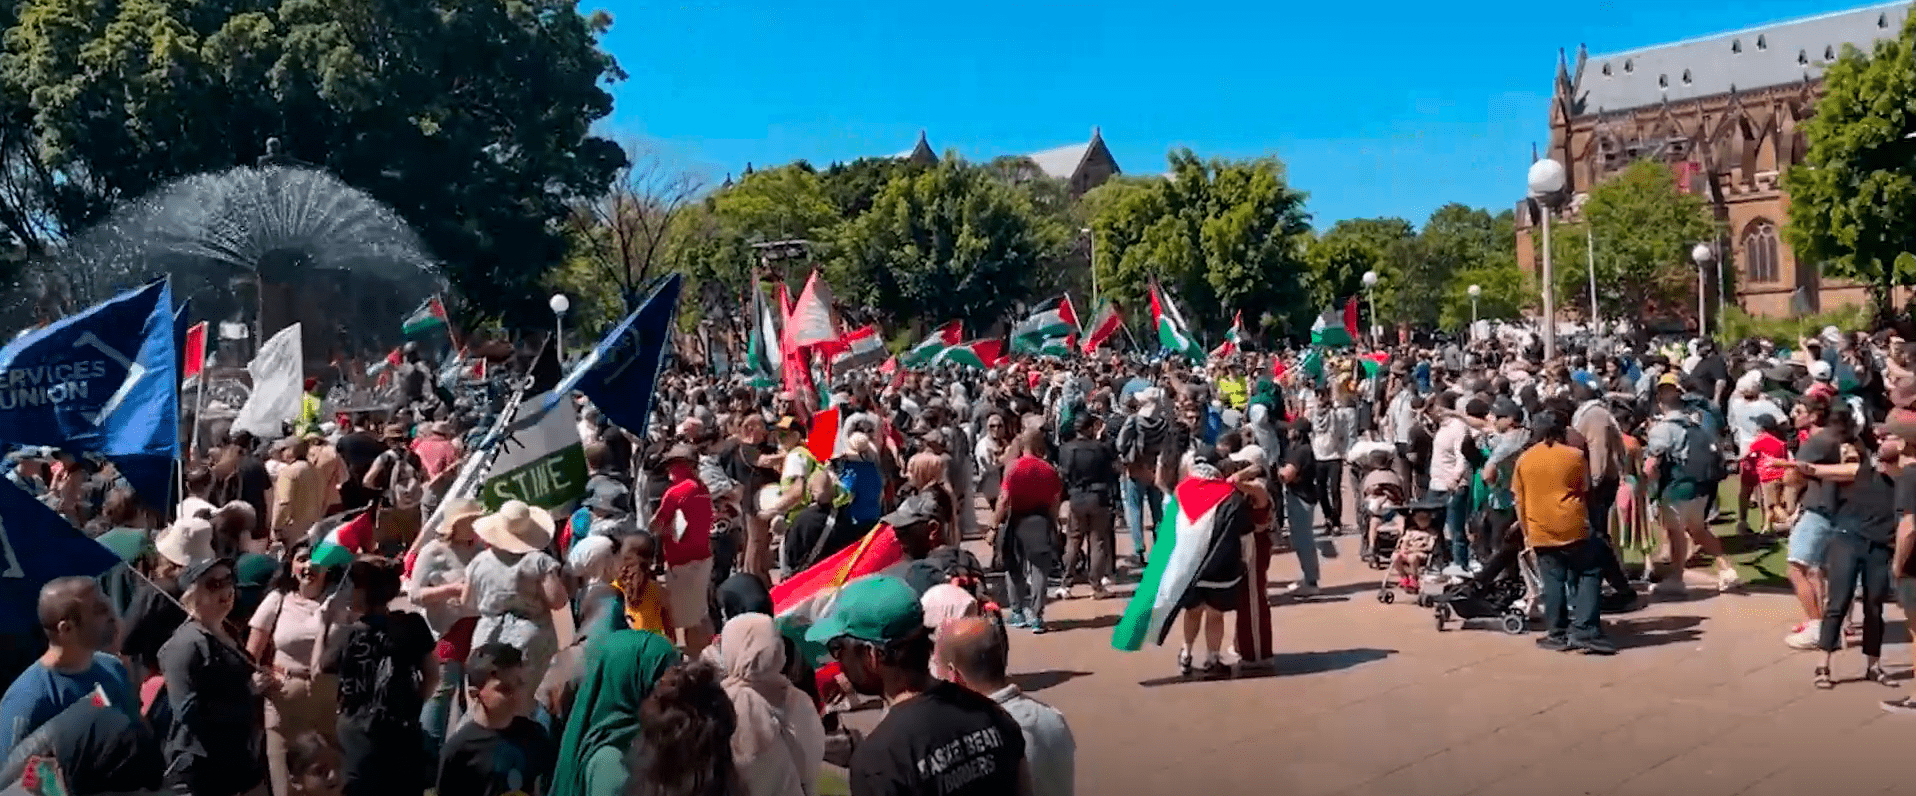 В Сиднее порядка 14 тысяч человек вышли на митинг поддержать Палестину